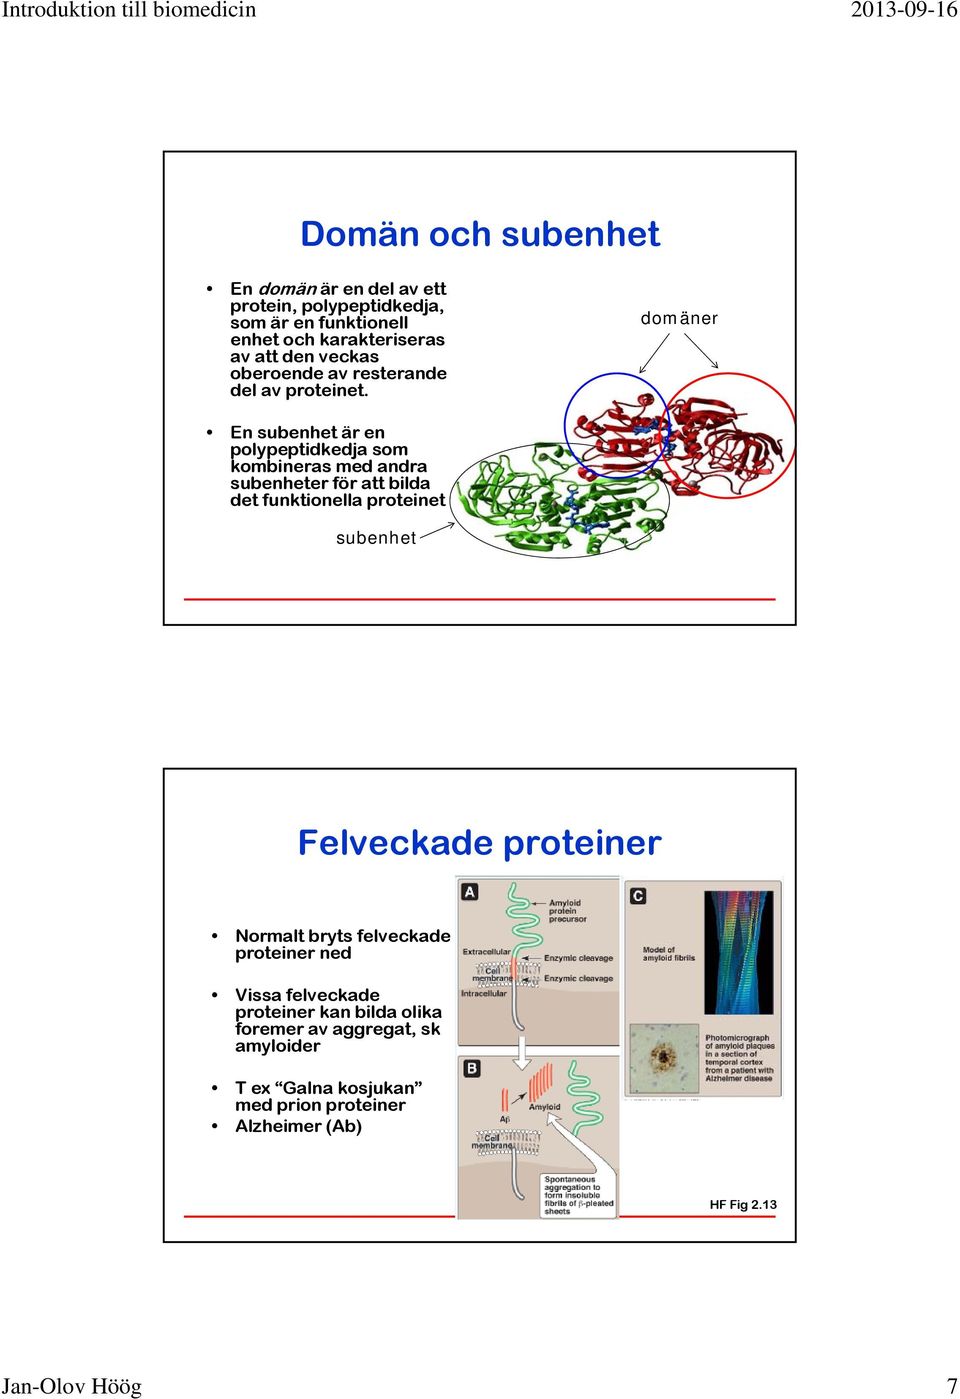 domäner En subenhet är en polypeptidkedja som kombineras med andra subenheter för att bilda det funktionella proteinet subenhet